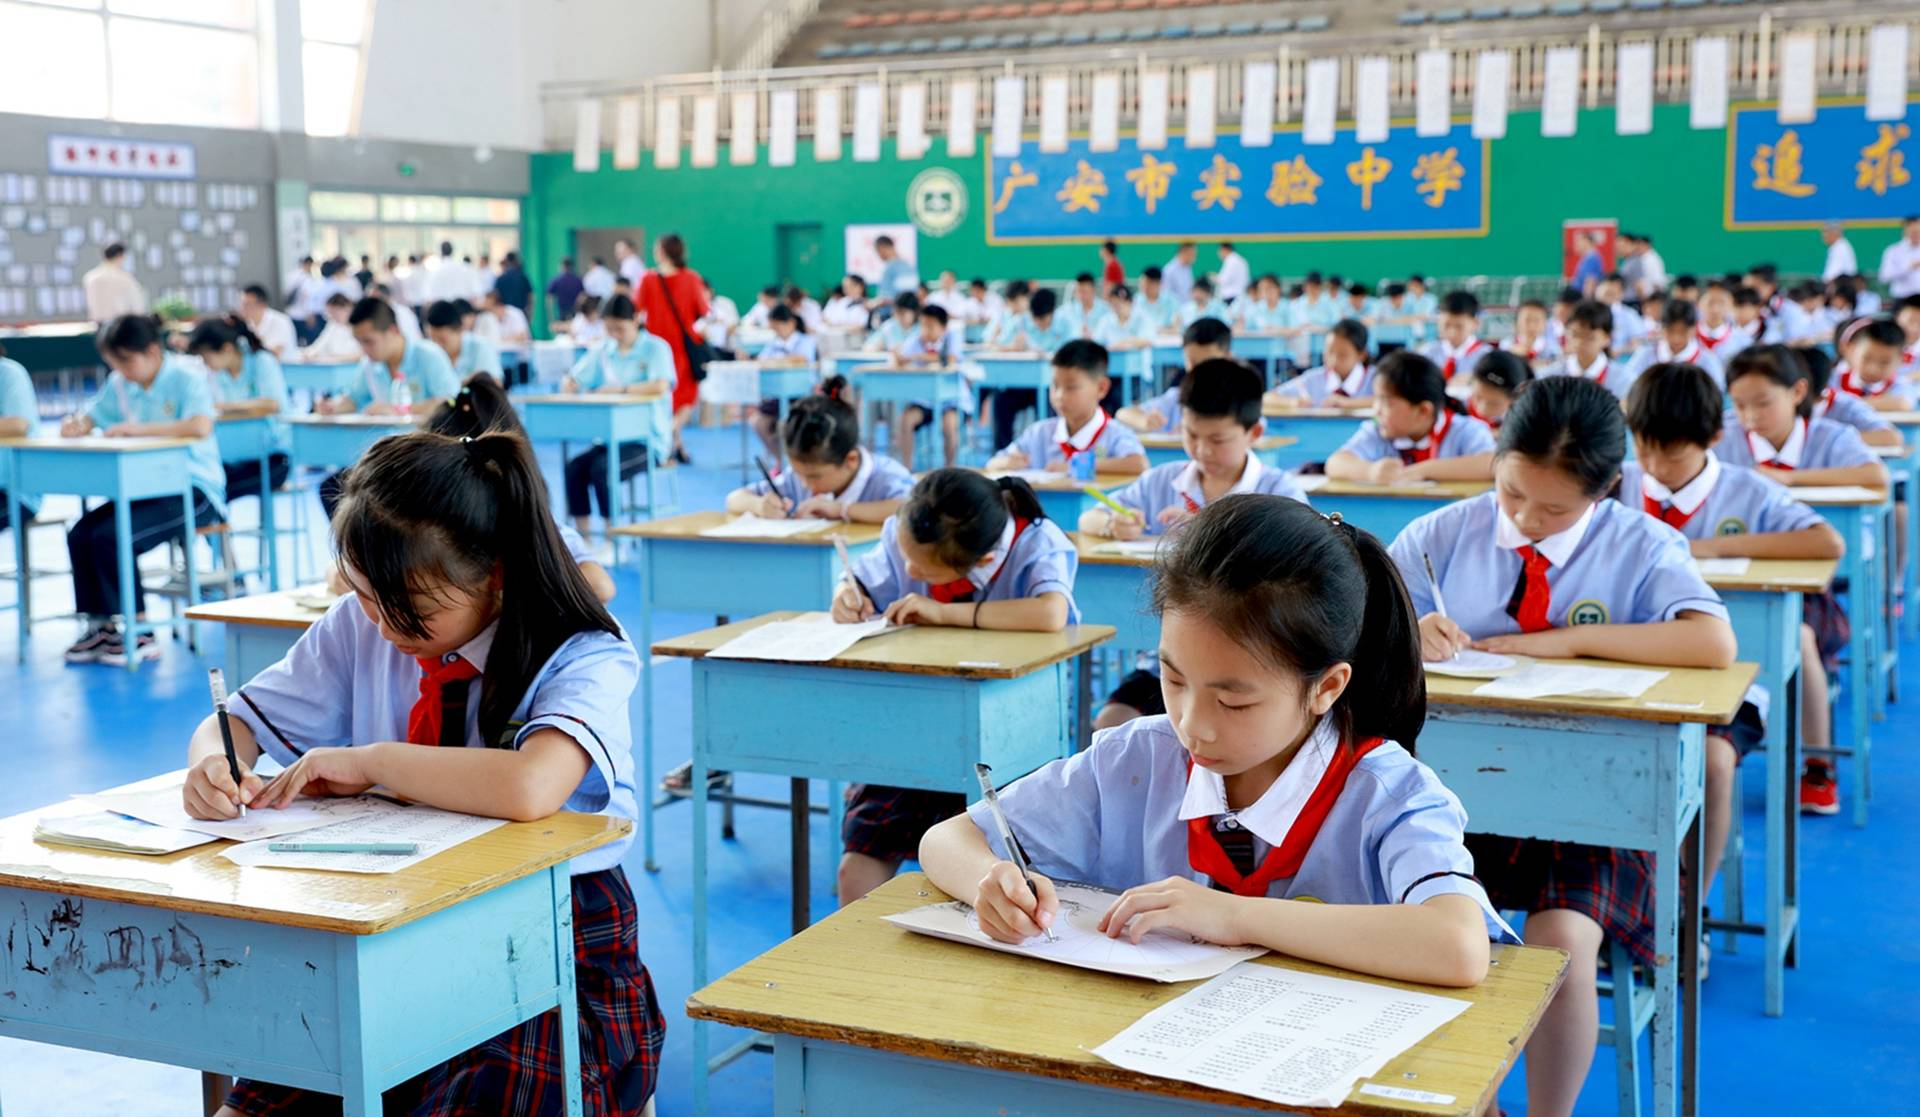 「高度篩選」社會與中國教育策略的嚴重斷裂